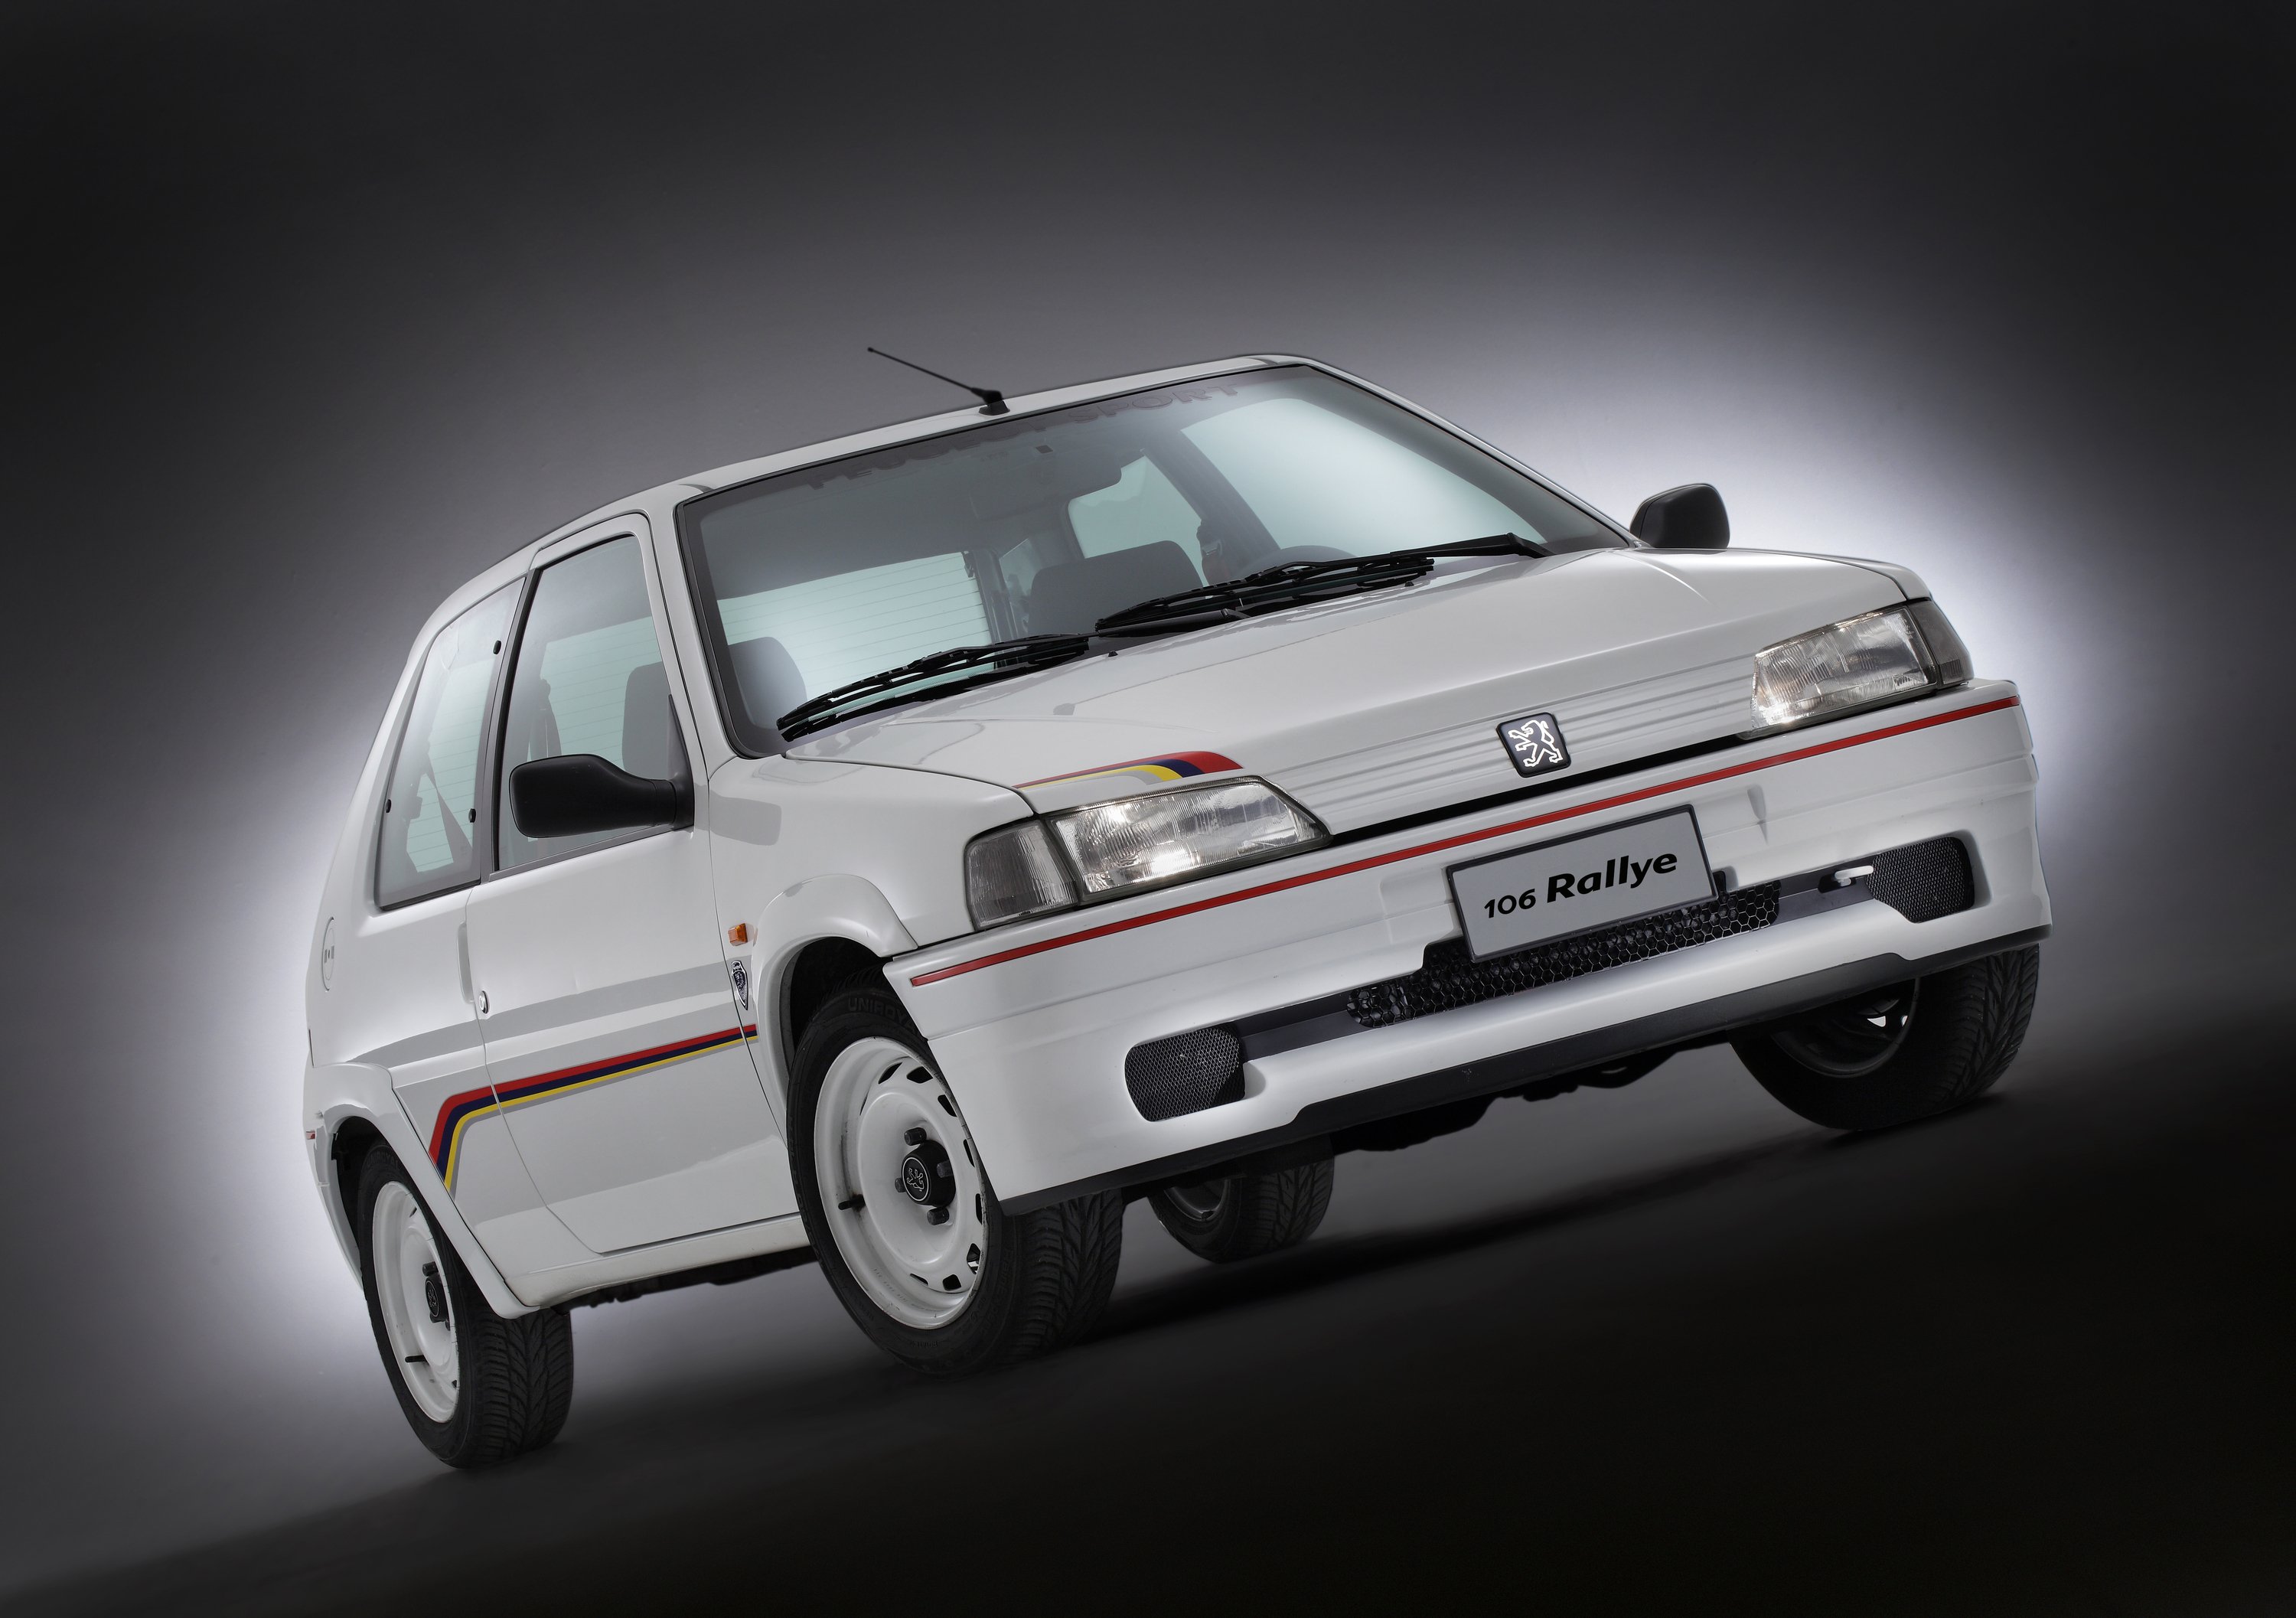 Peugeot 106 Rallye: rivive una gloria del Leone